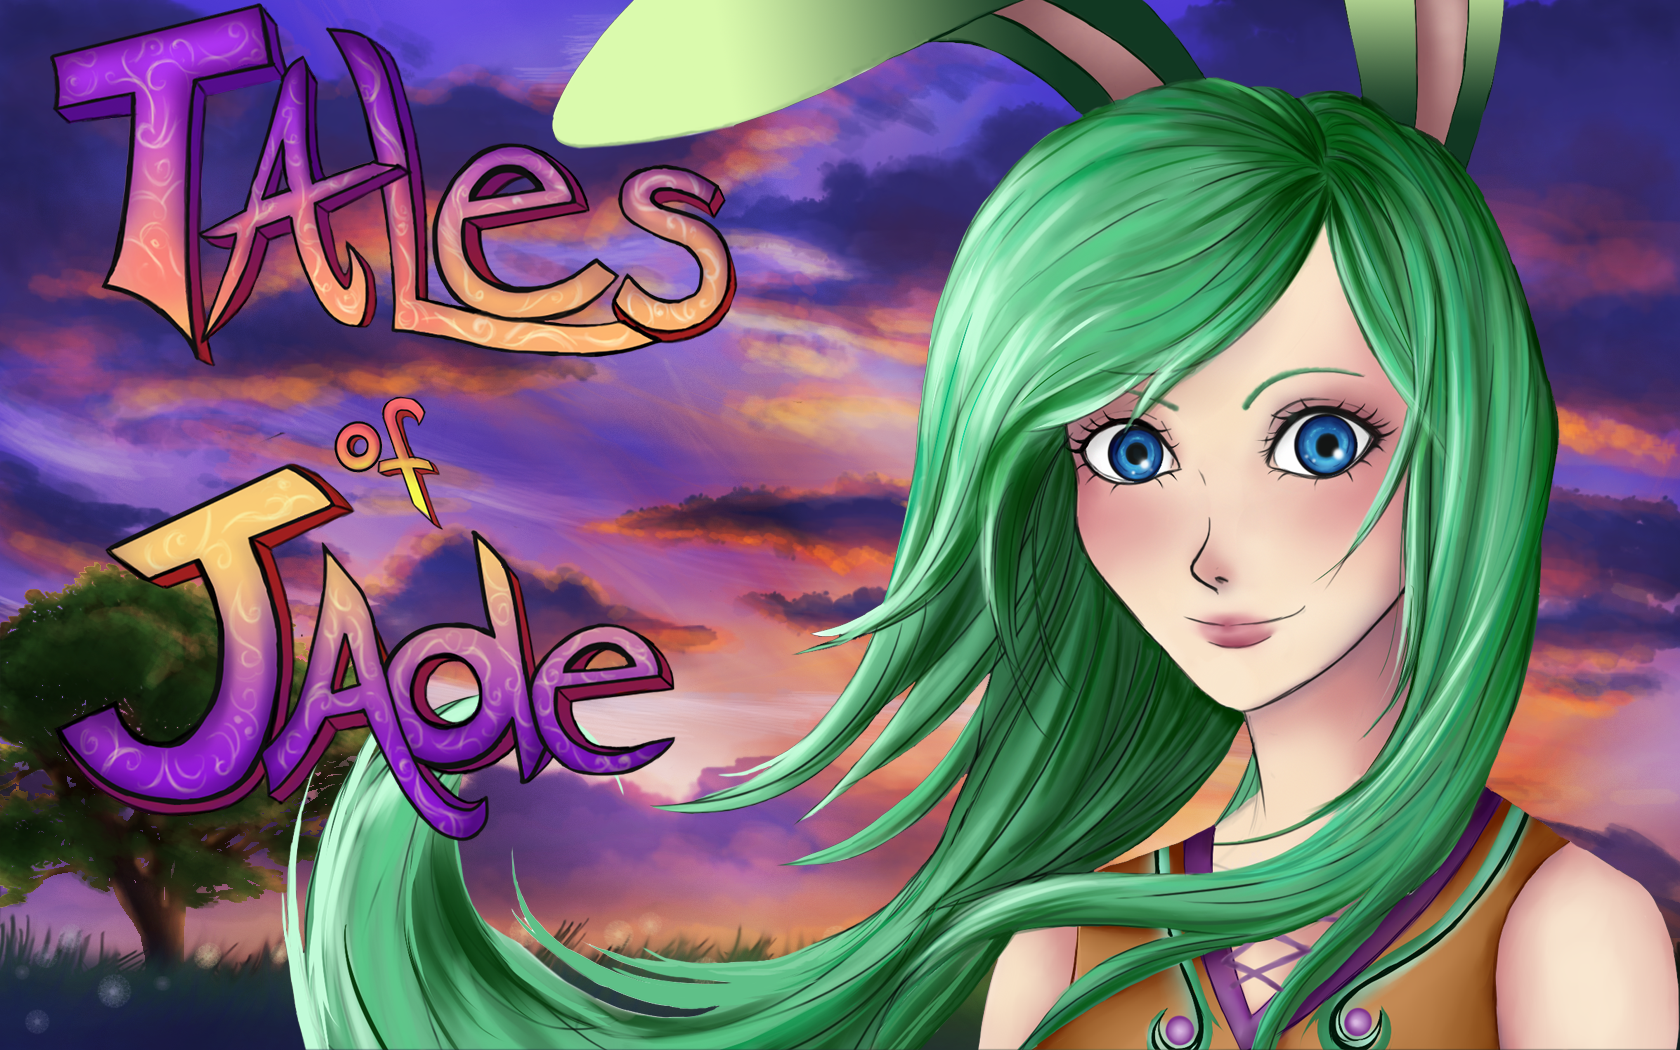 Tales Of Jade